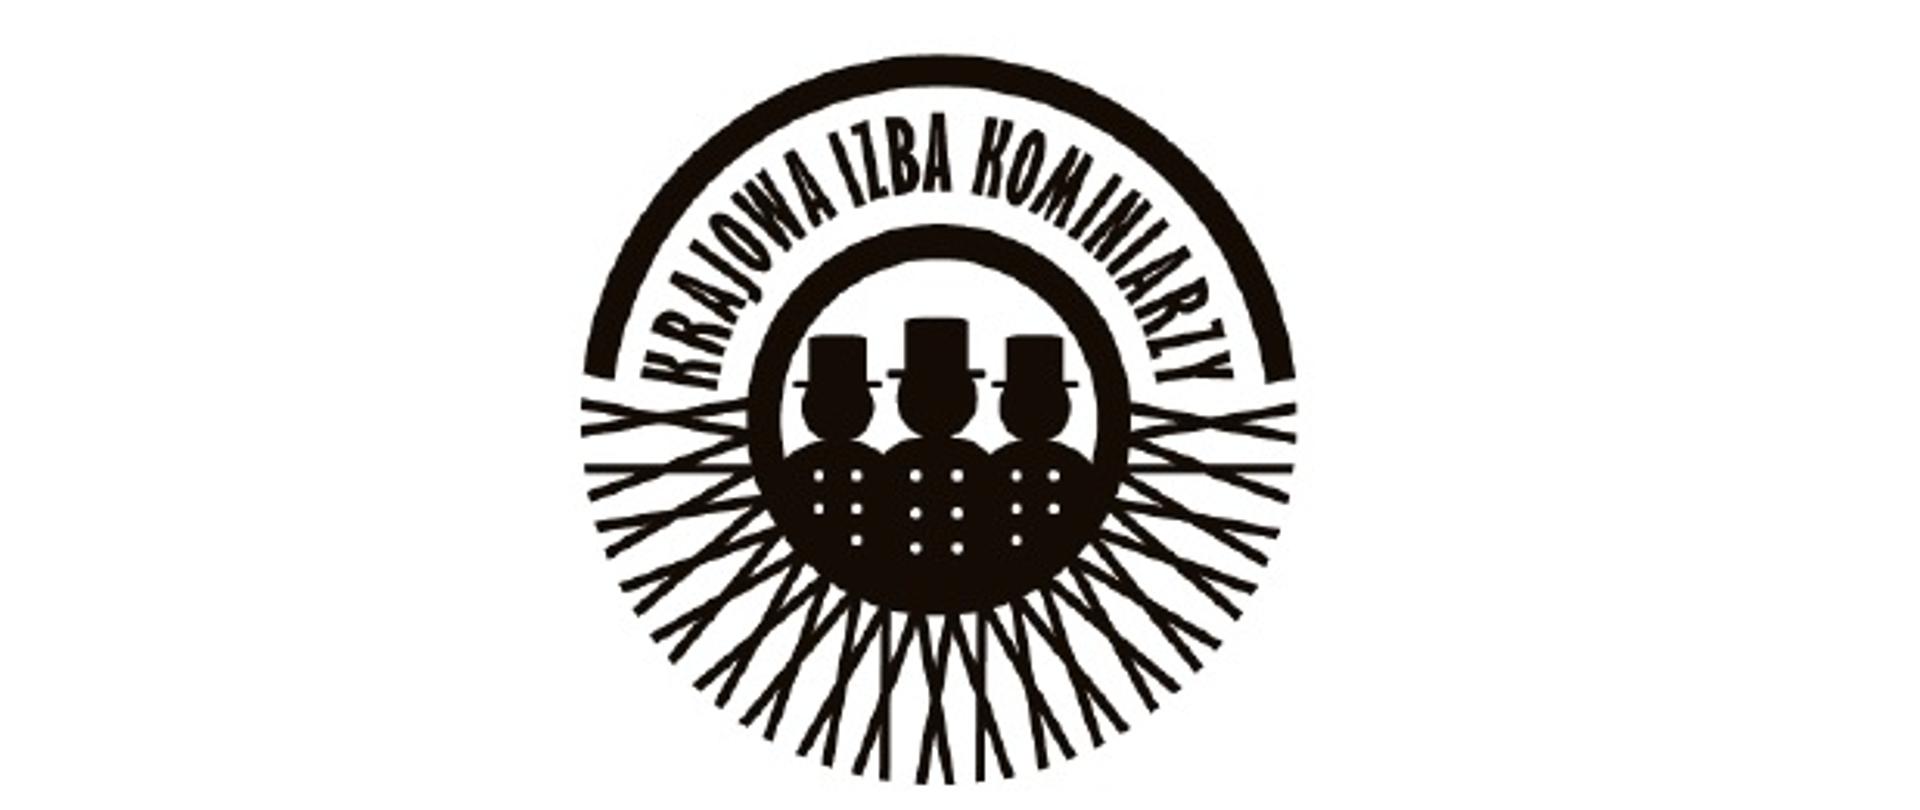 Zdjęcie przedstawia logo Krajowej Izby Kominiarzy: logo na bazie okręgu, w górnej części znajduje się napis "Krajowa Izba Kominiarzy", na środku zarys sylwetek kominiarzy w kapeluszach z widocznymi guzikami, na dole znajdują się wzory w kształcie litery "X". Logo w czarno-białym kolorze.